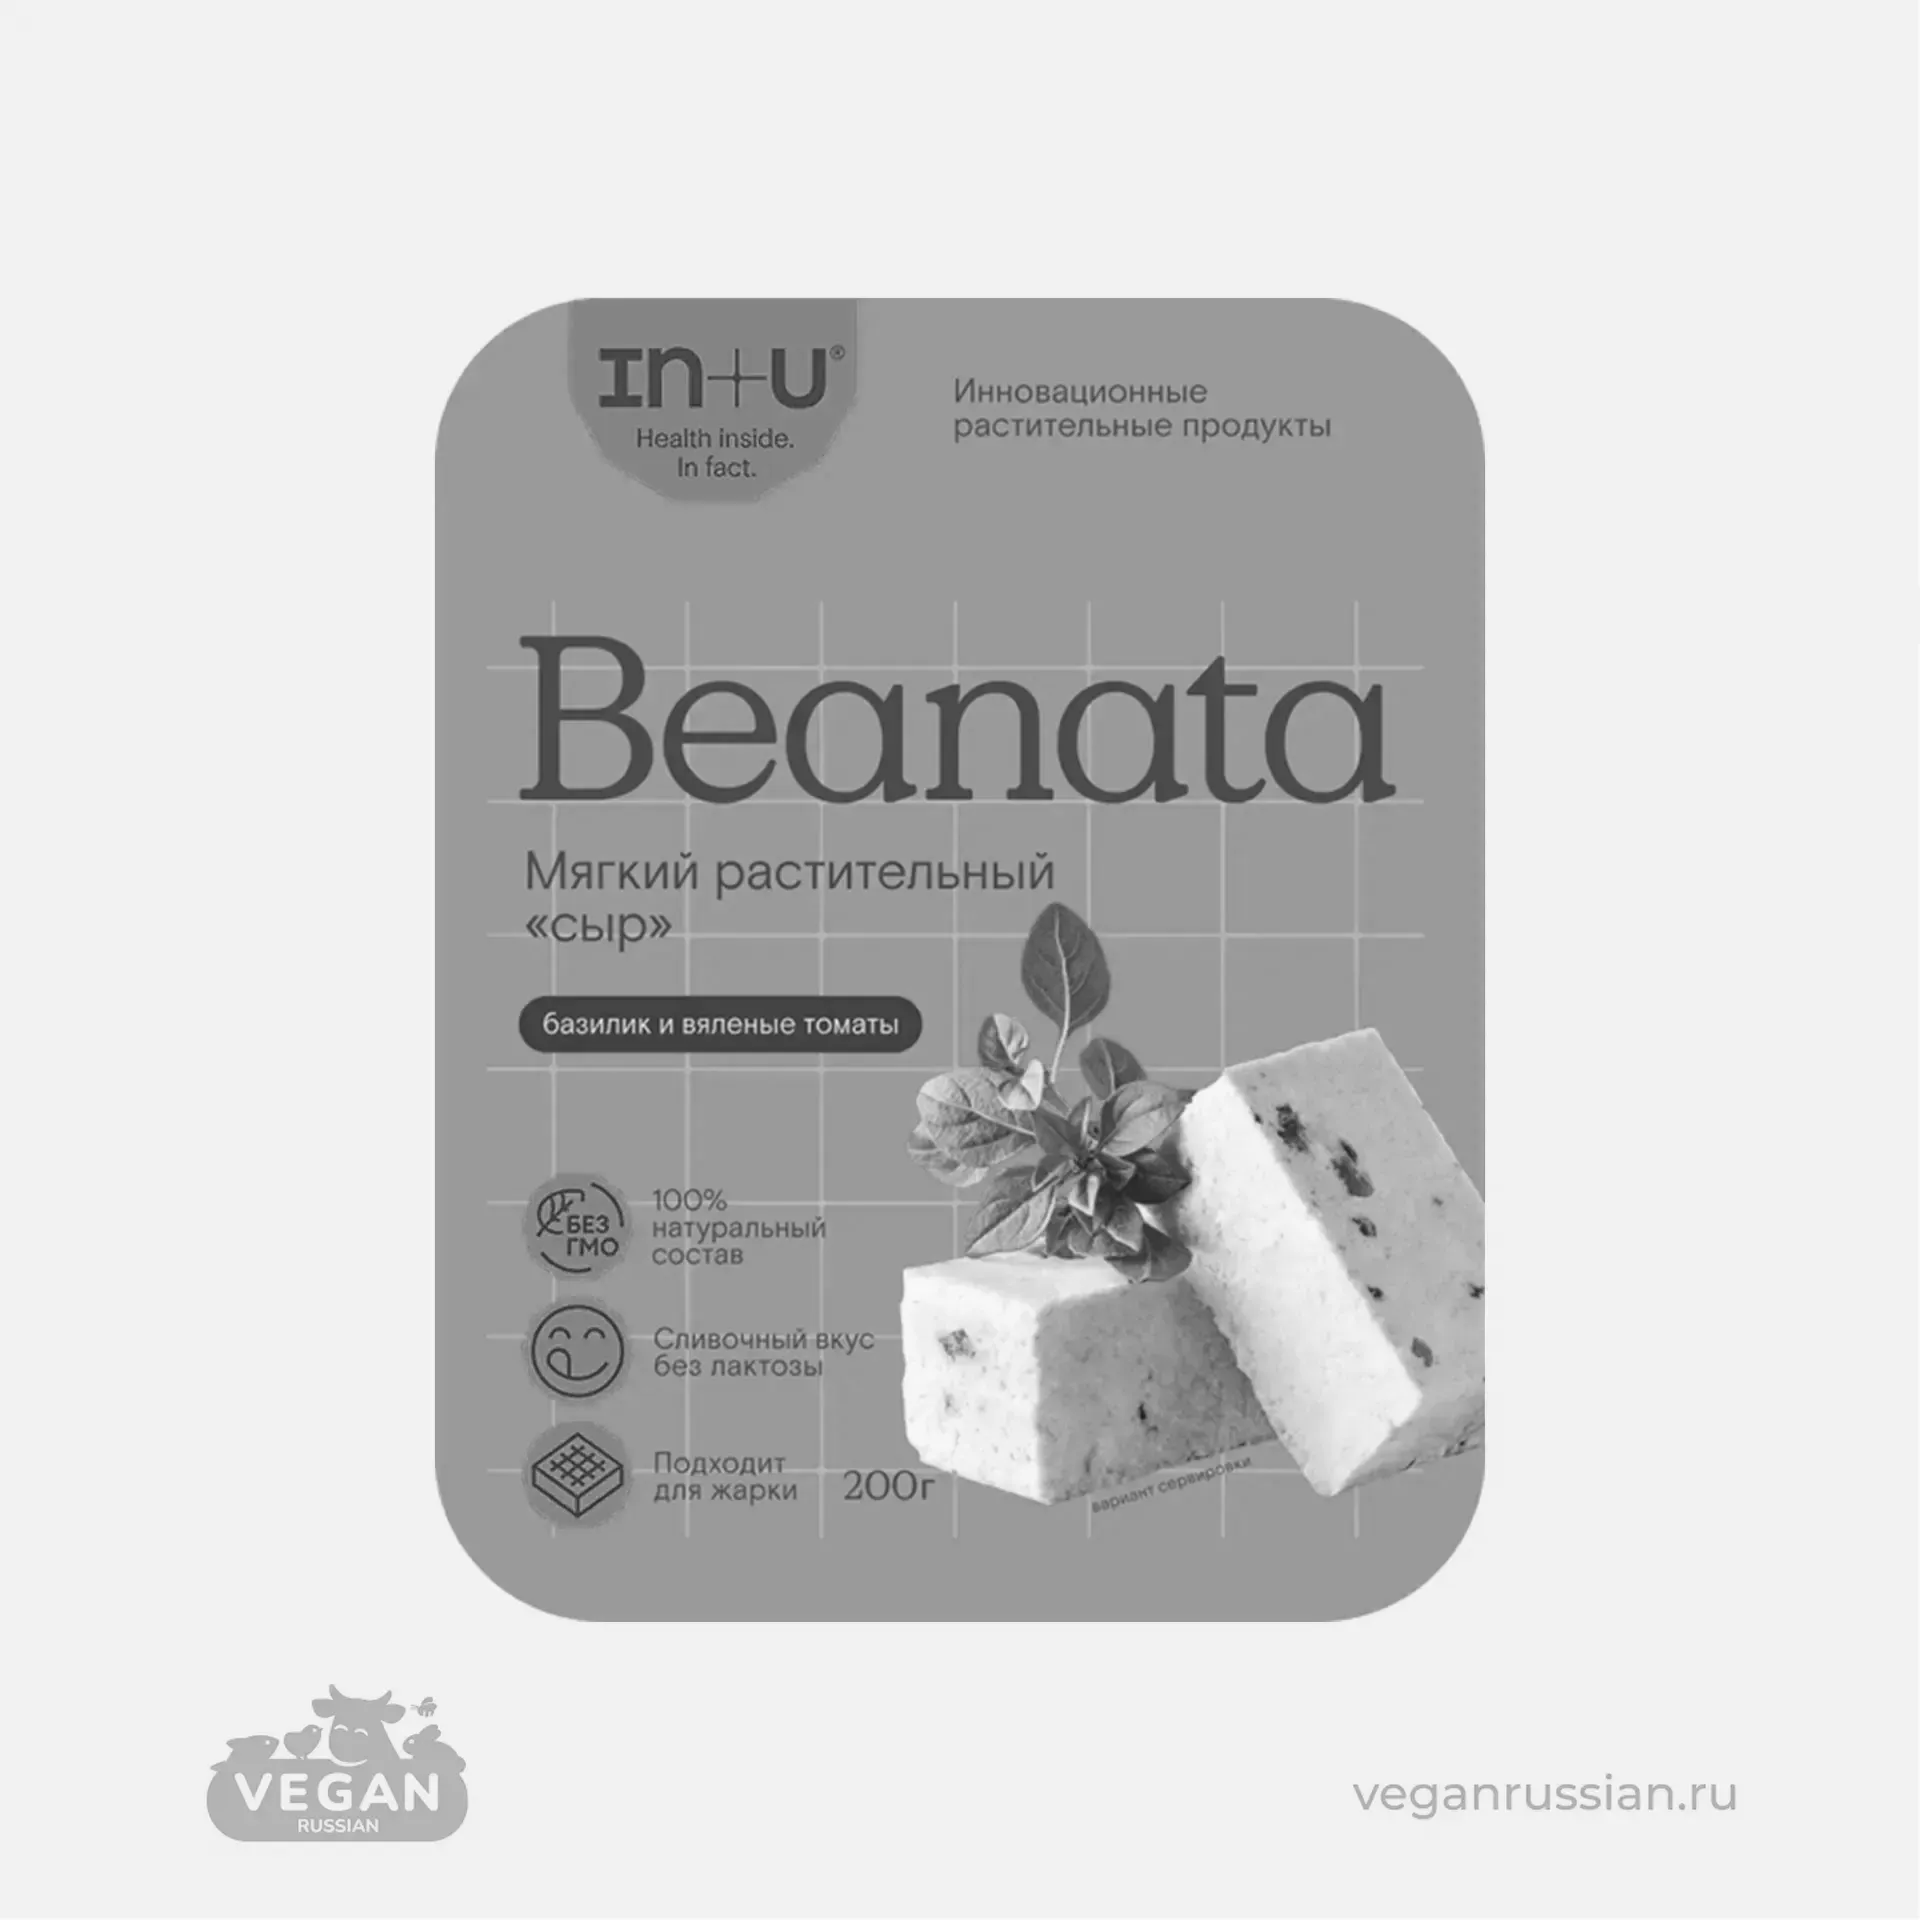 Архив: Мягкий растительный сыр базилик и вяленые томаты Beanata IN+U 200 г